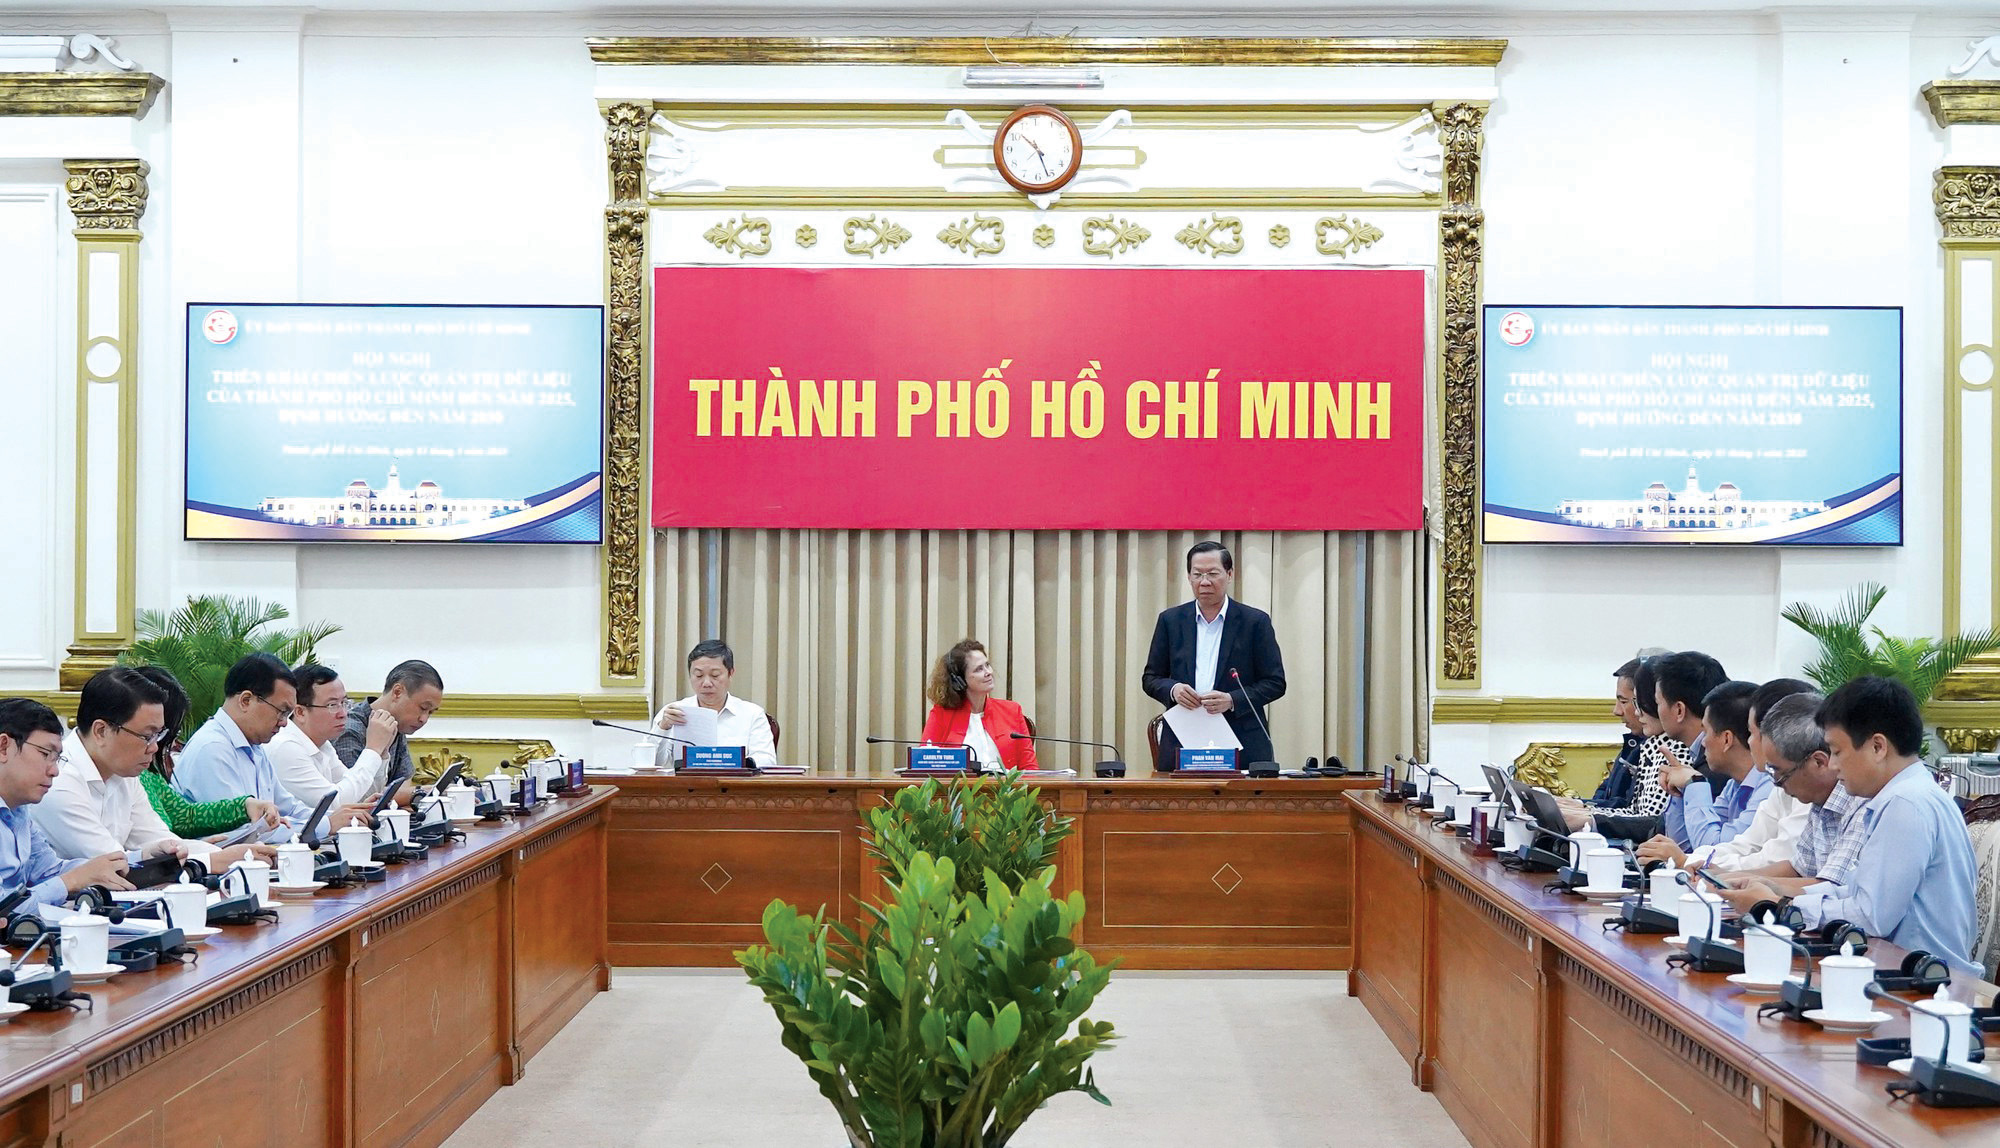 Đồng chí Phan Văn Mãi - Chủ tịch UBND TP. Hồ Chí Minh (đứng) chủ trì Hội nghị Chuyển đổi số TP. Hồ Chí Minh.